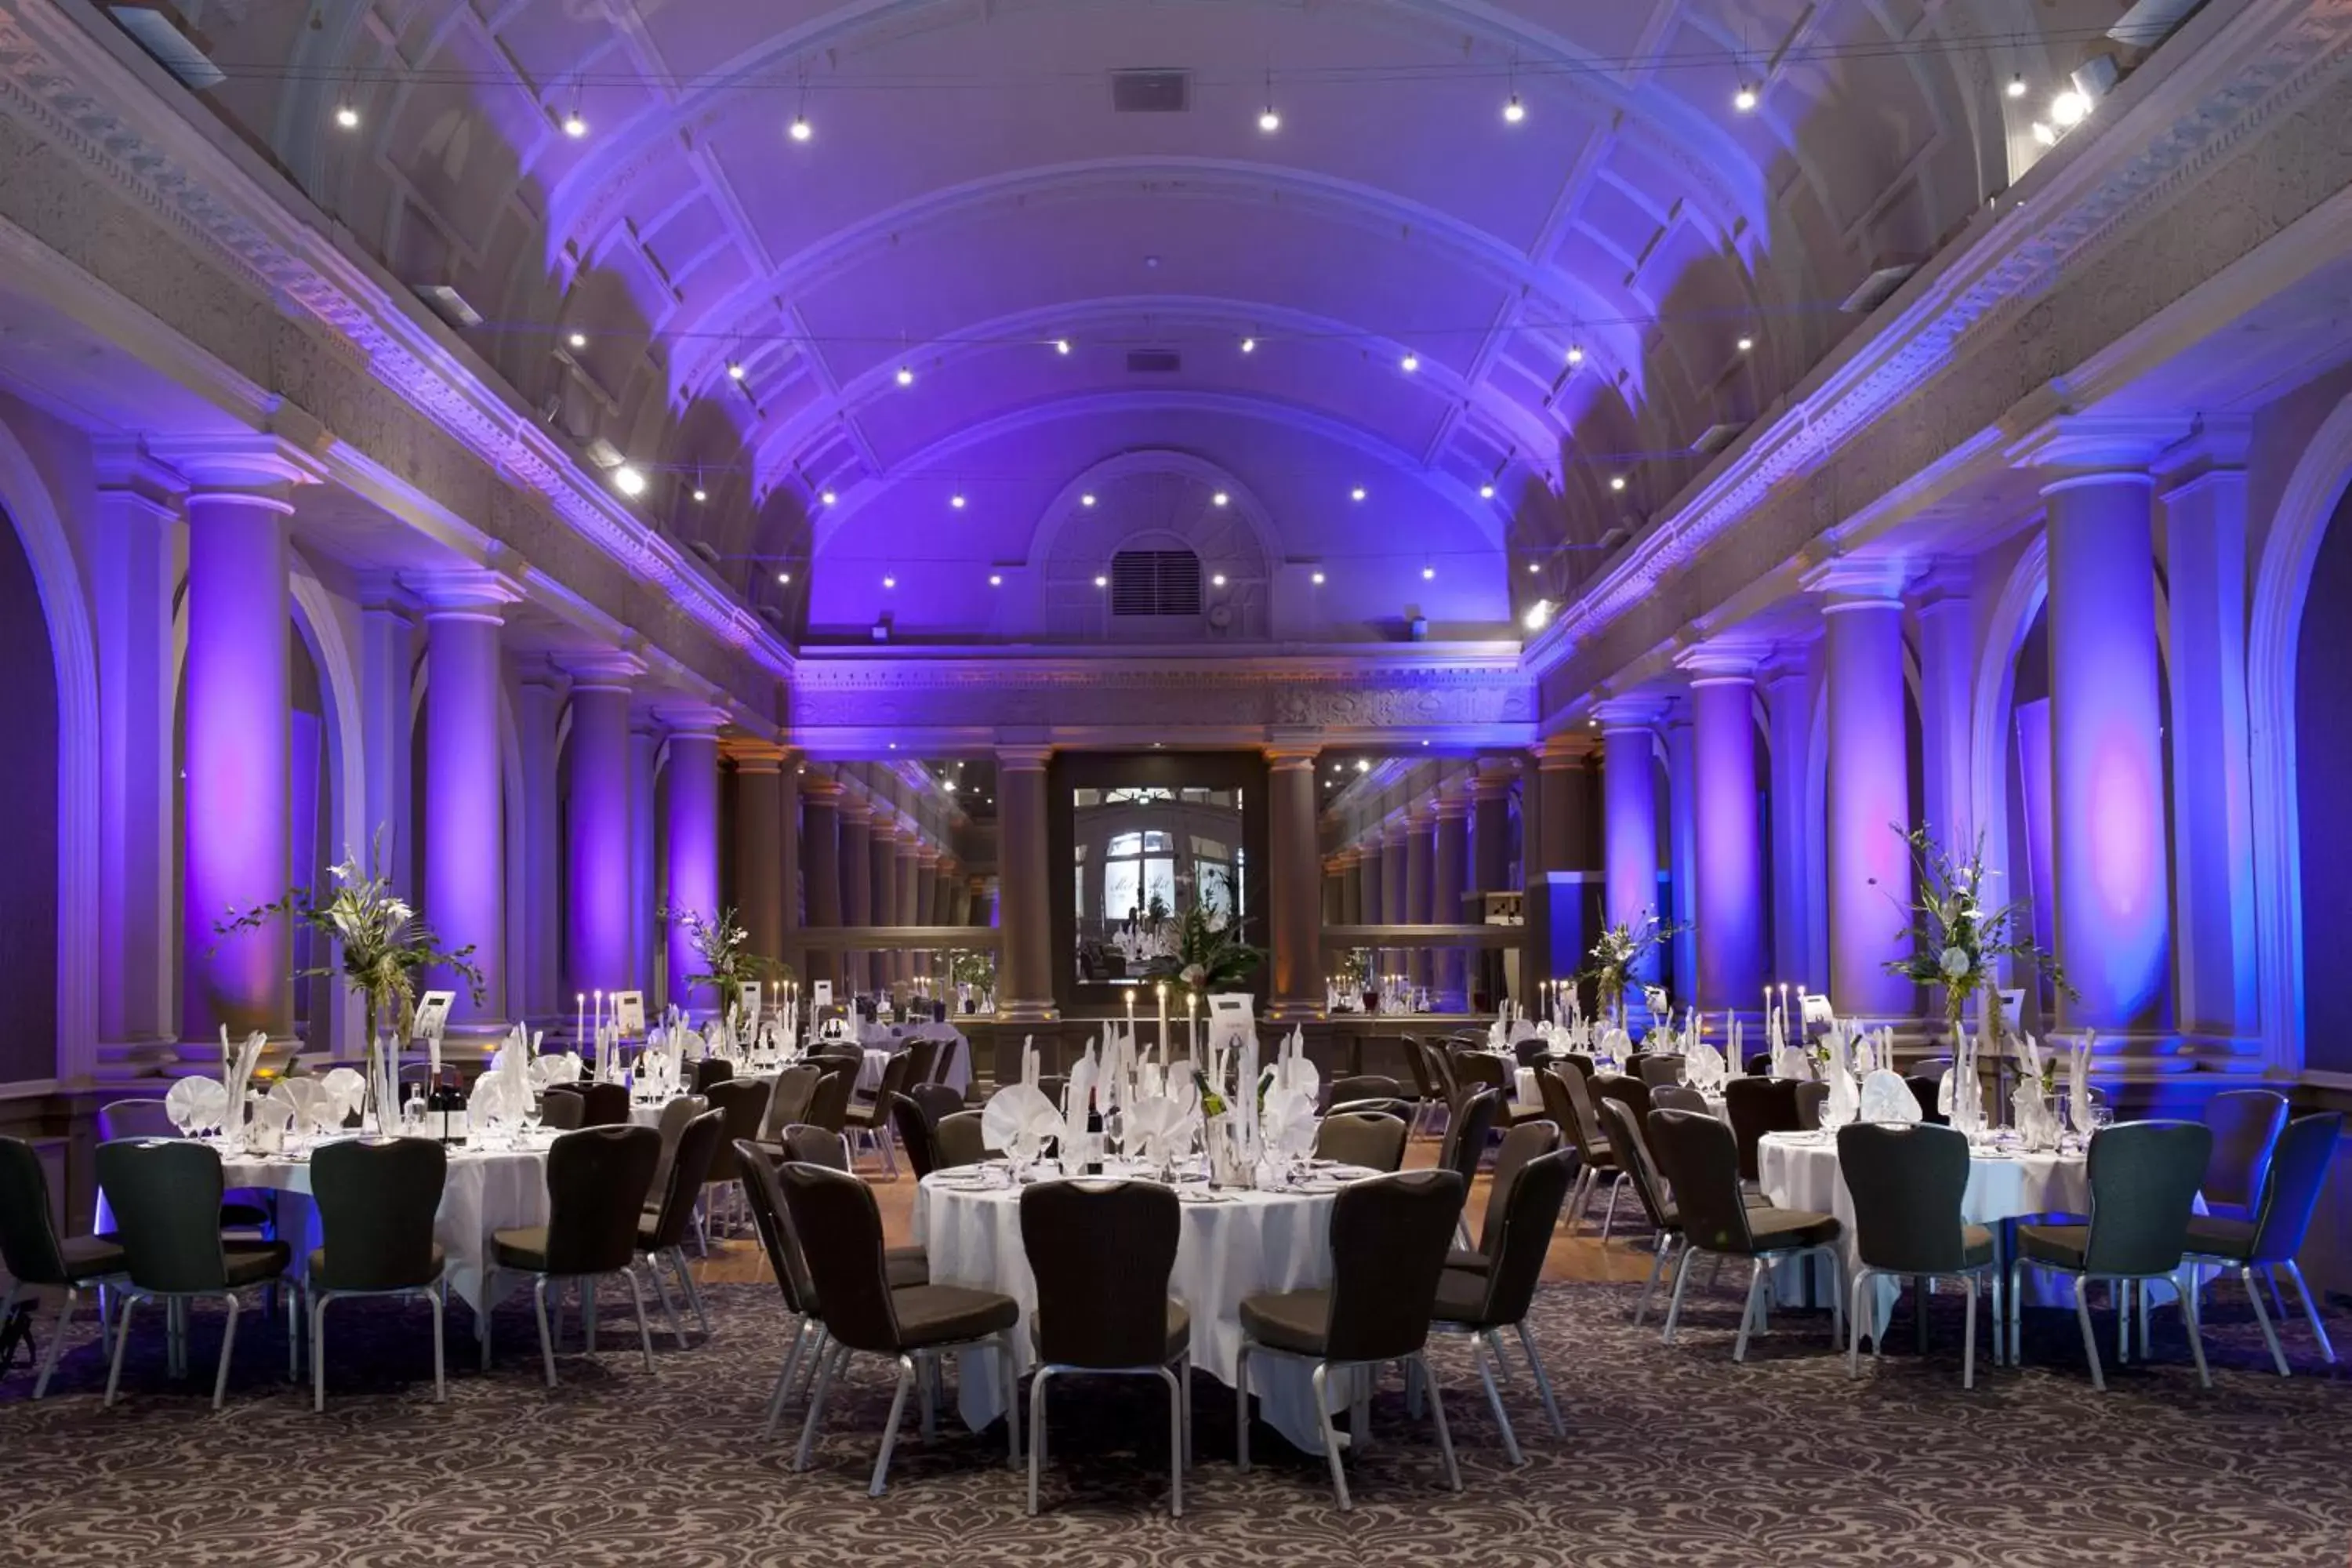 Banquet/Function facilities, Banquet Facilities in The Met Hotel Leeds